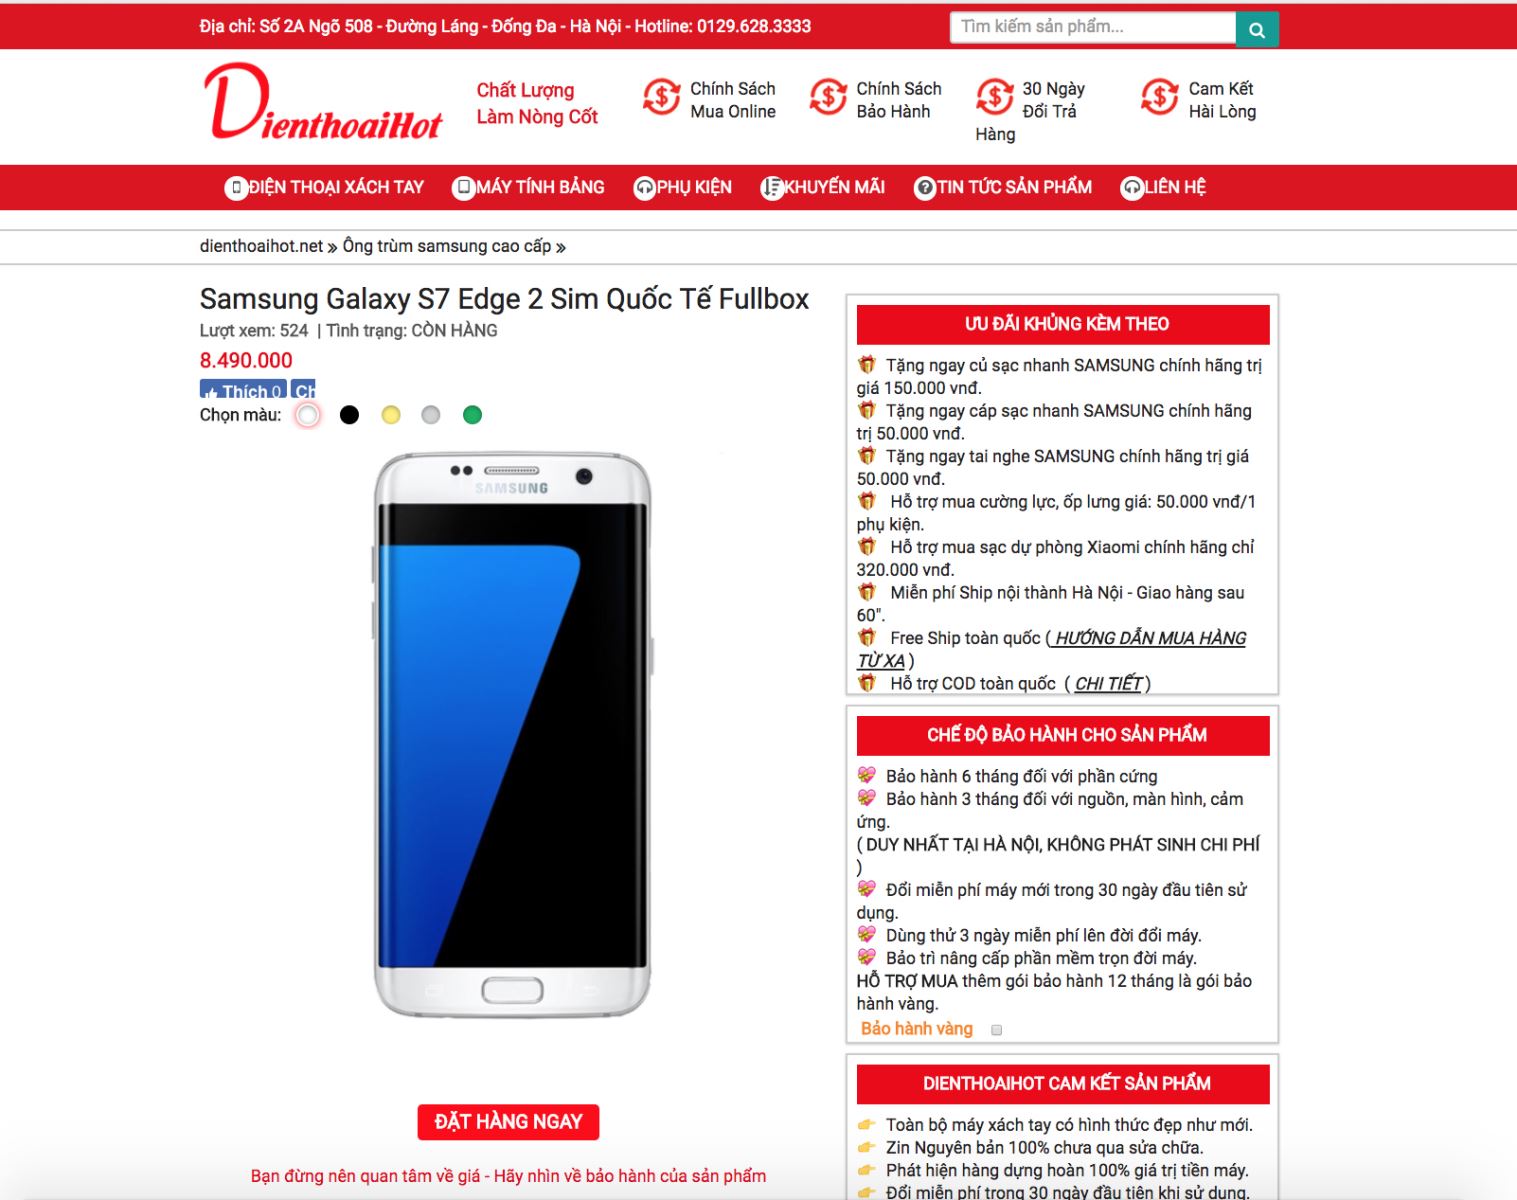 Giá bán Galaxy S7 Edge 2 sim xách tay tại Dienthoaihot